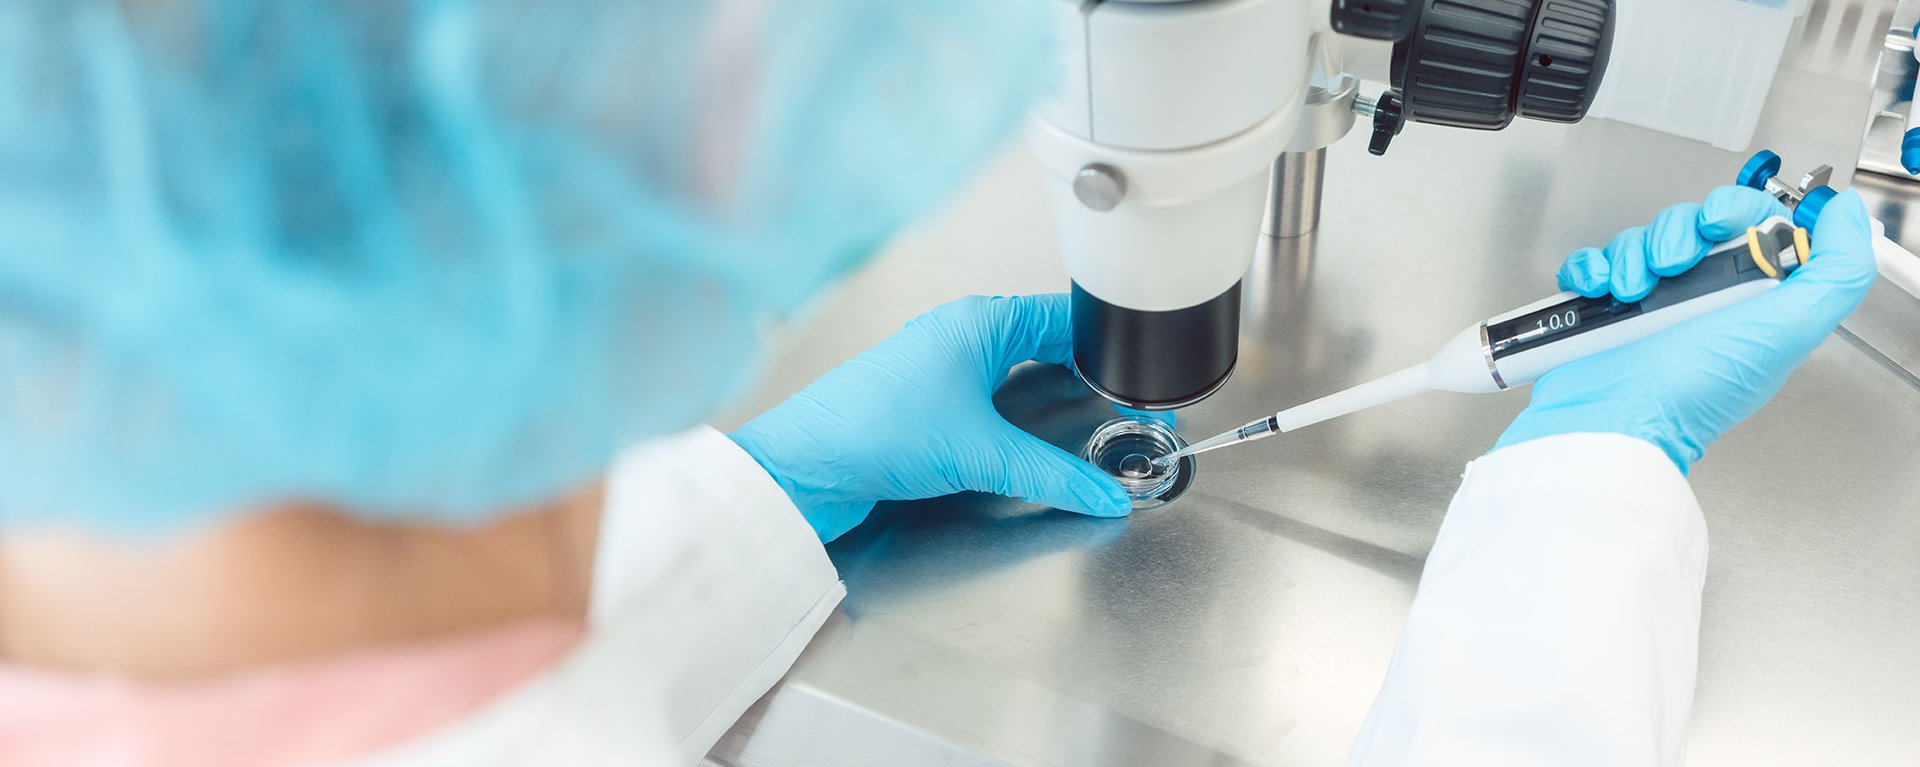 Eine Person, mit Haarhaube, weißem Kittel und Einweghandschuhen, arbeitet mit einer Pipette an einem Mikroskop.